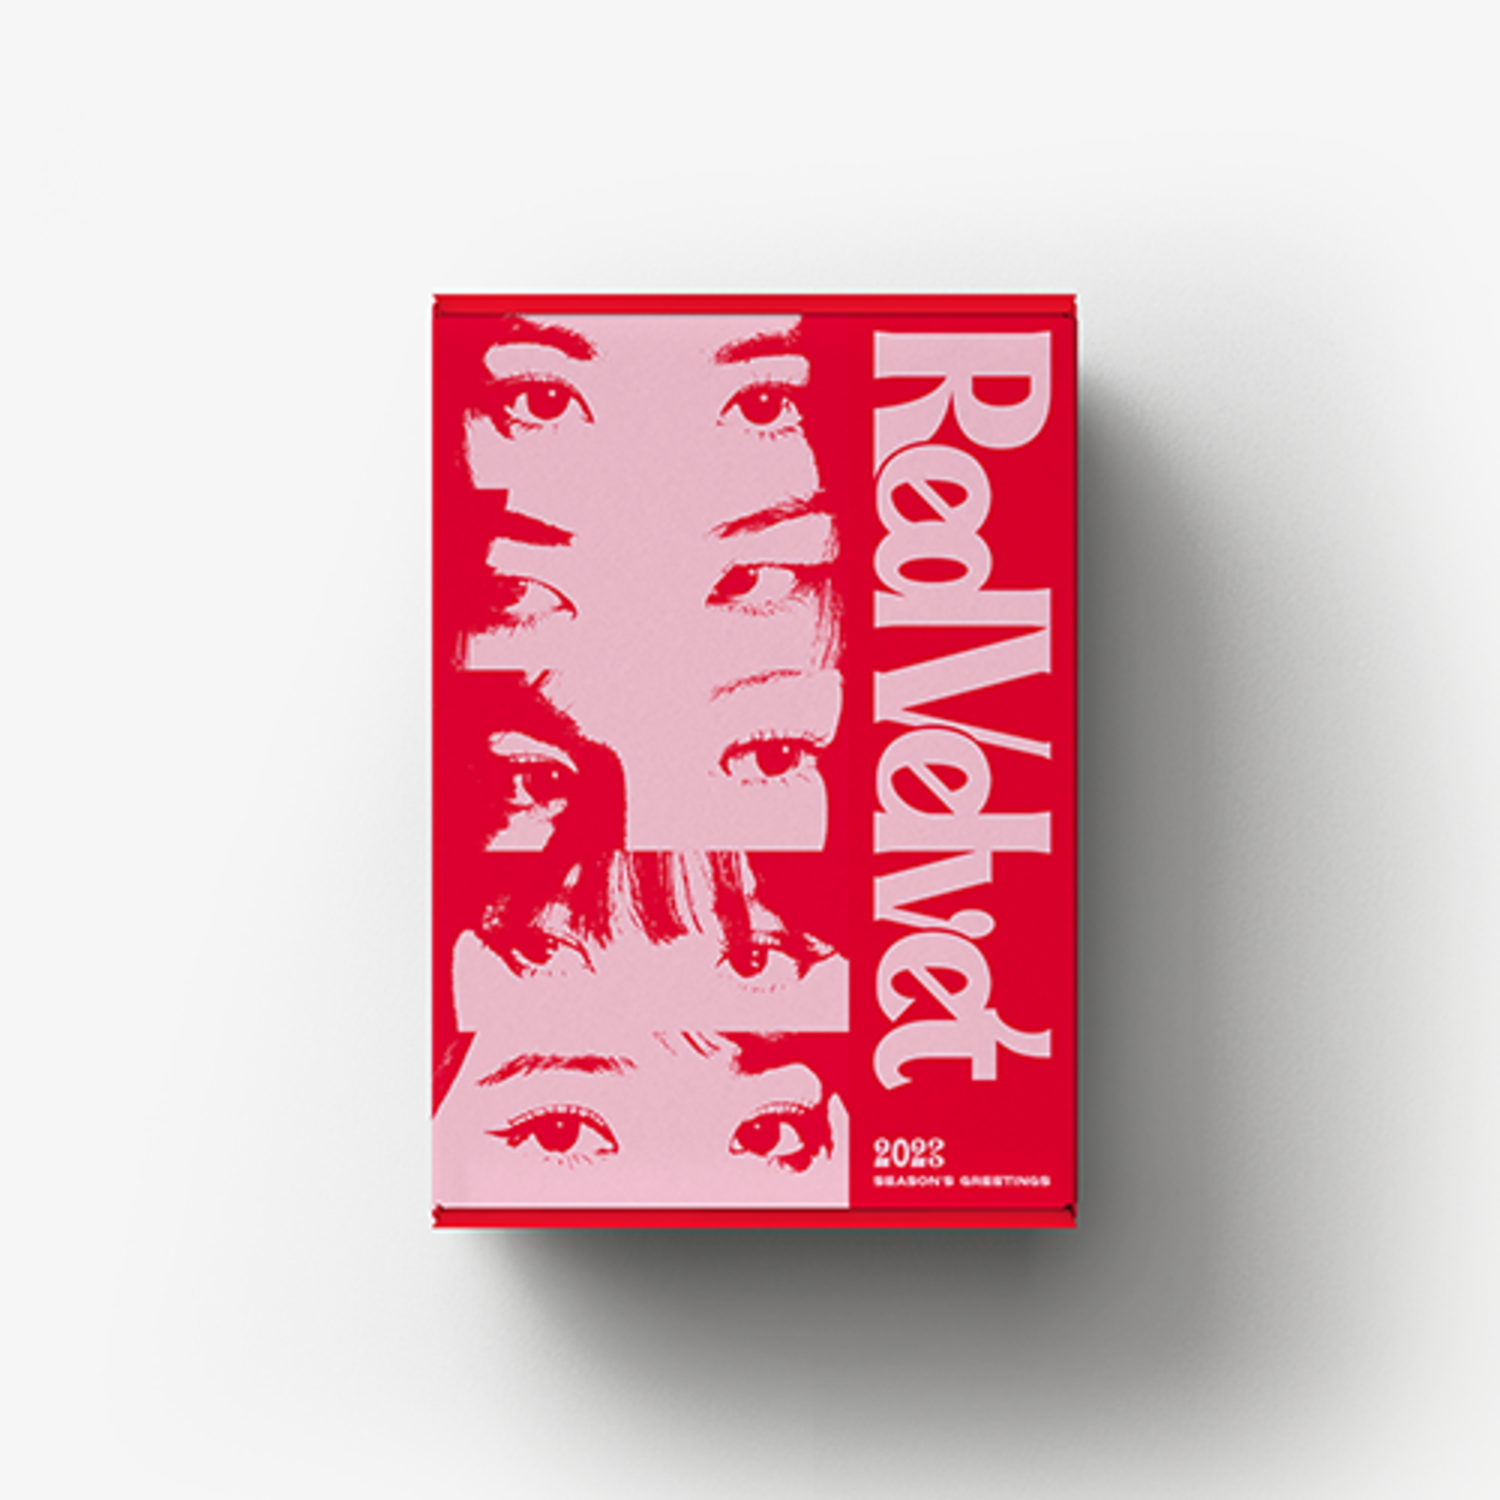 [특전 증정] 레드벨벳(Red Velvet) - 2023 SEASON’S GREETINGS [Red Velvet] ** 포토카드 5종 1세트 + 폴라로이드형 포토카드 5종 중 랜덤 1종 증정